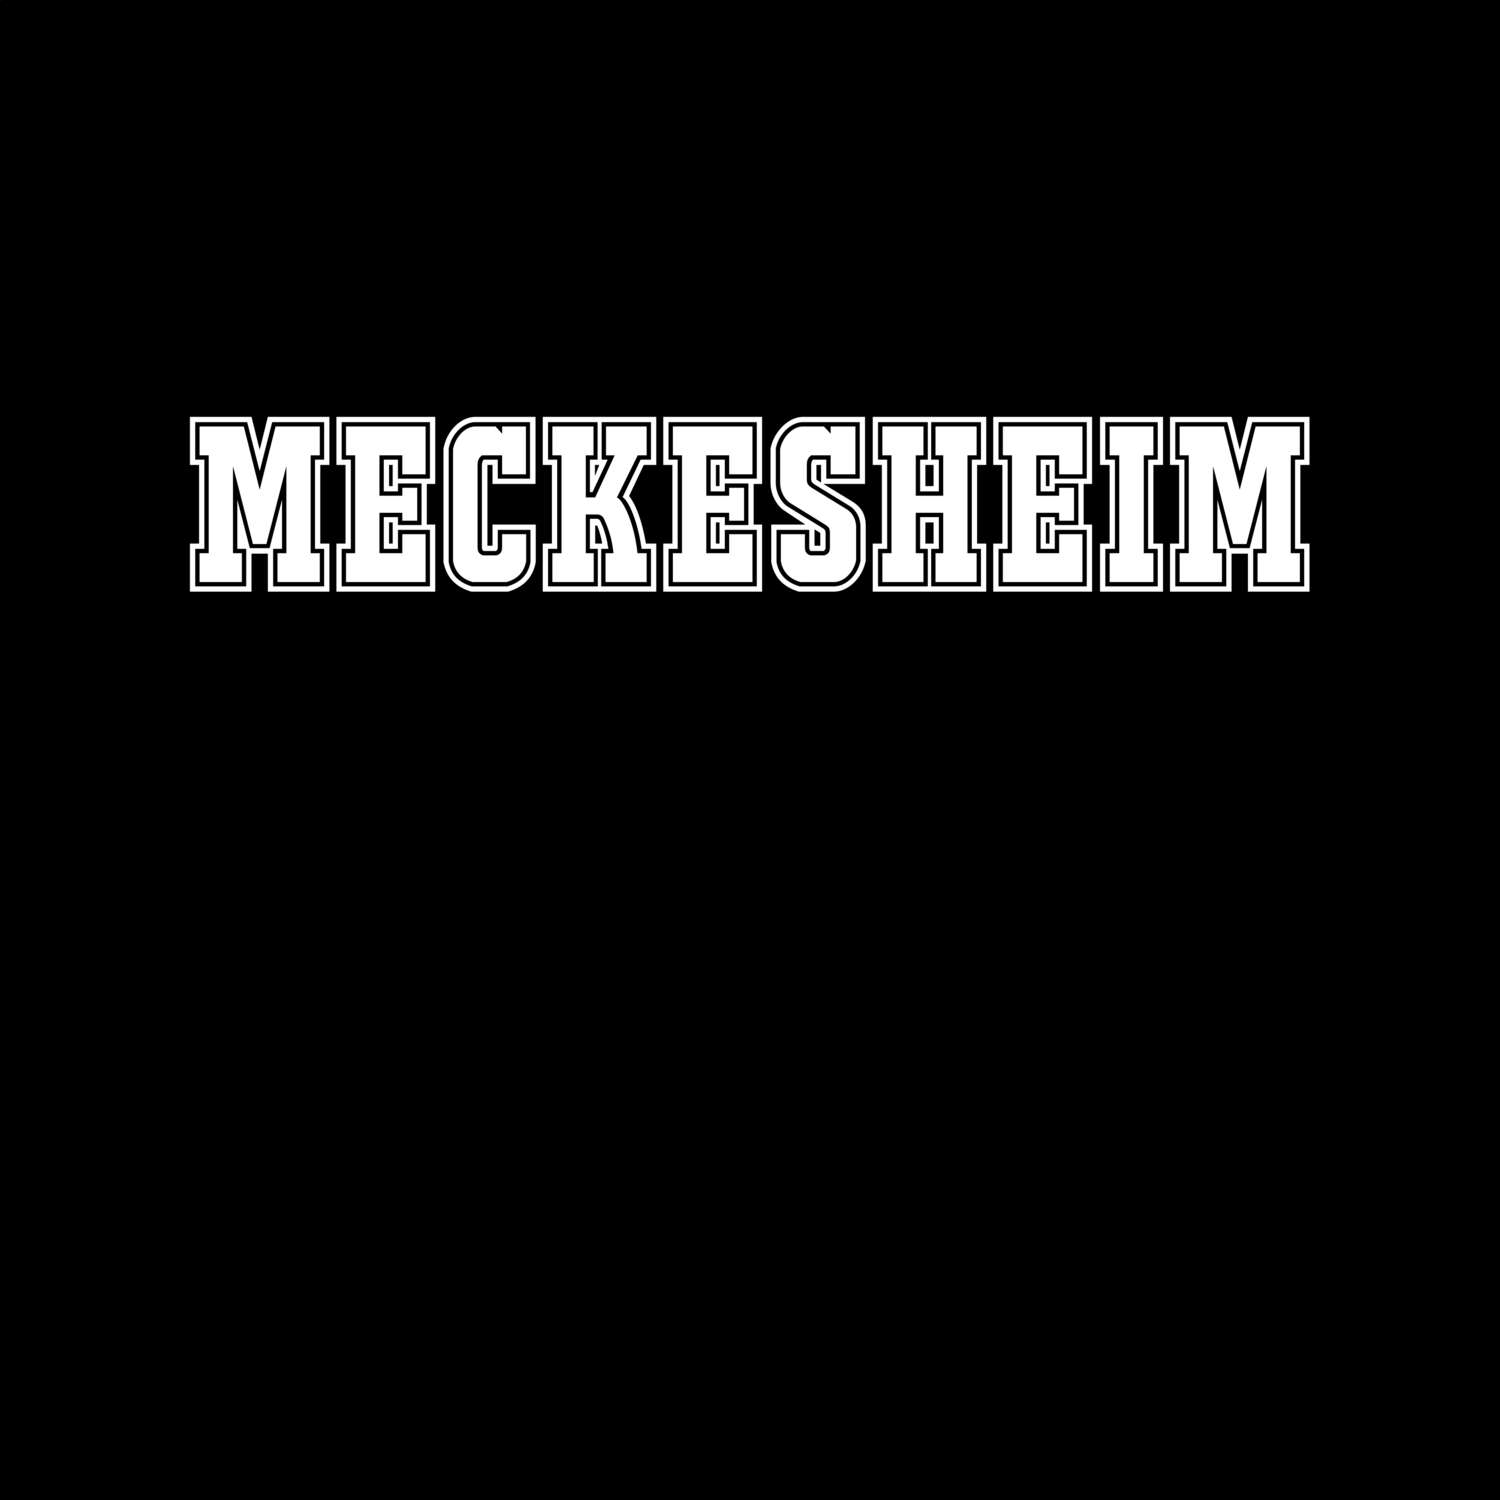 Meckesheim T-Shirt »Classic«